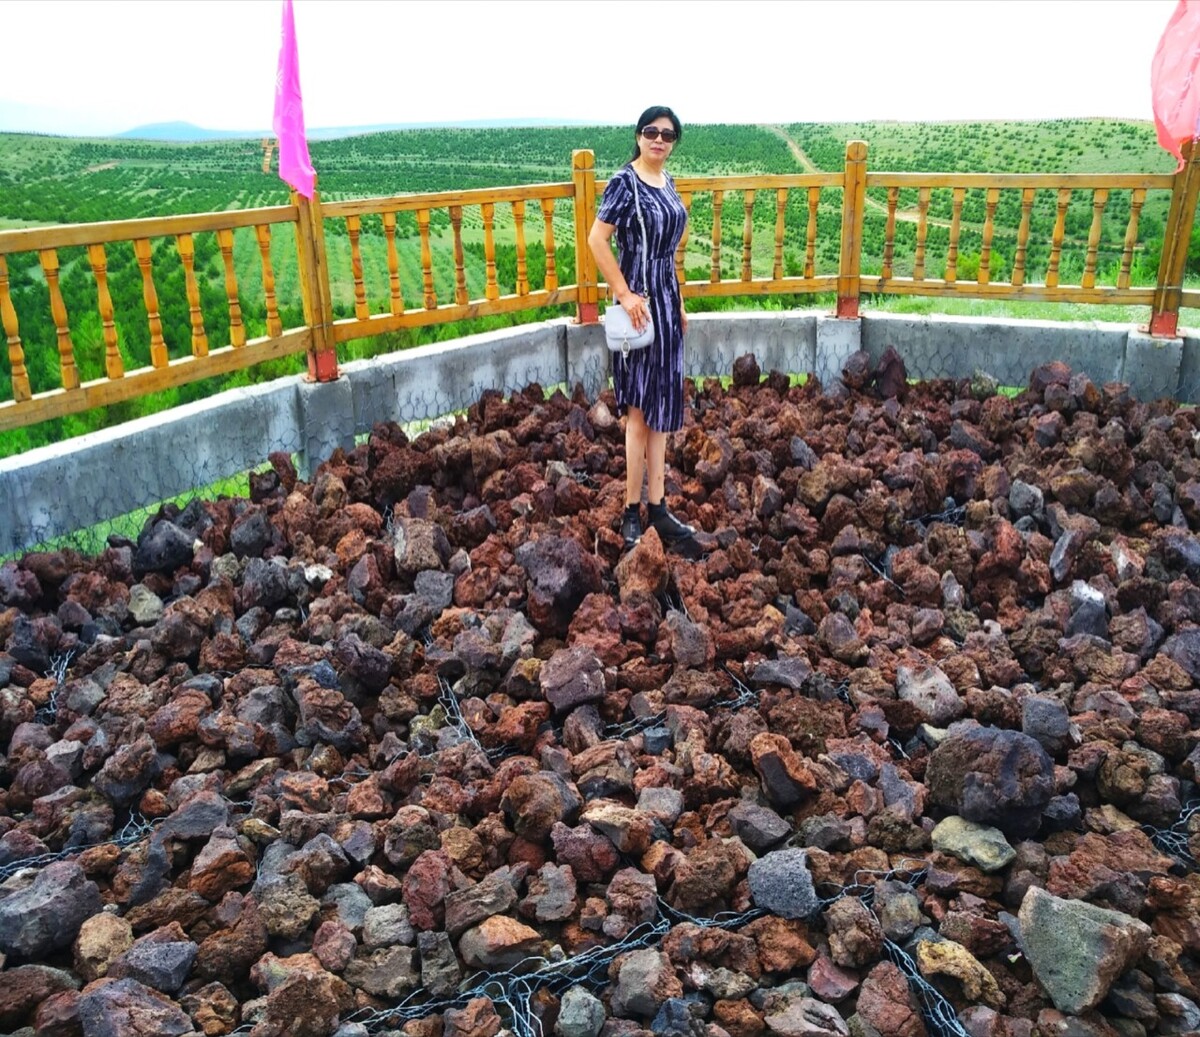 坛紫菜养殖技术,福建和浙江沿海地区种植许多紫菜